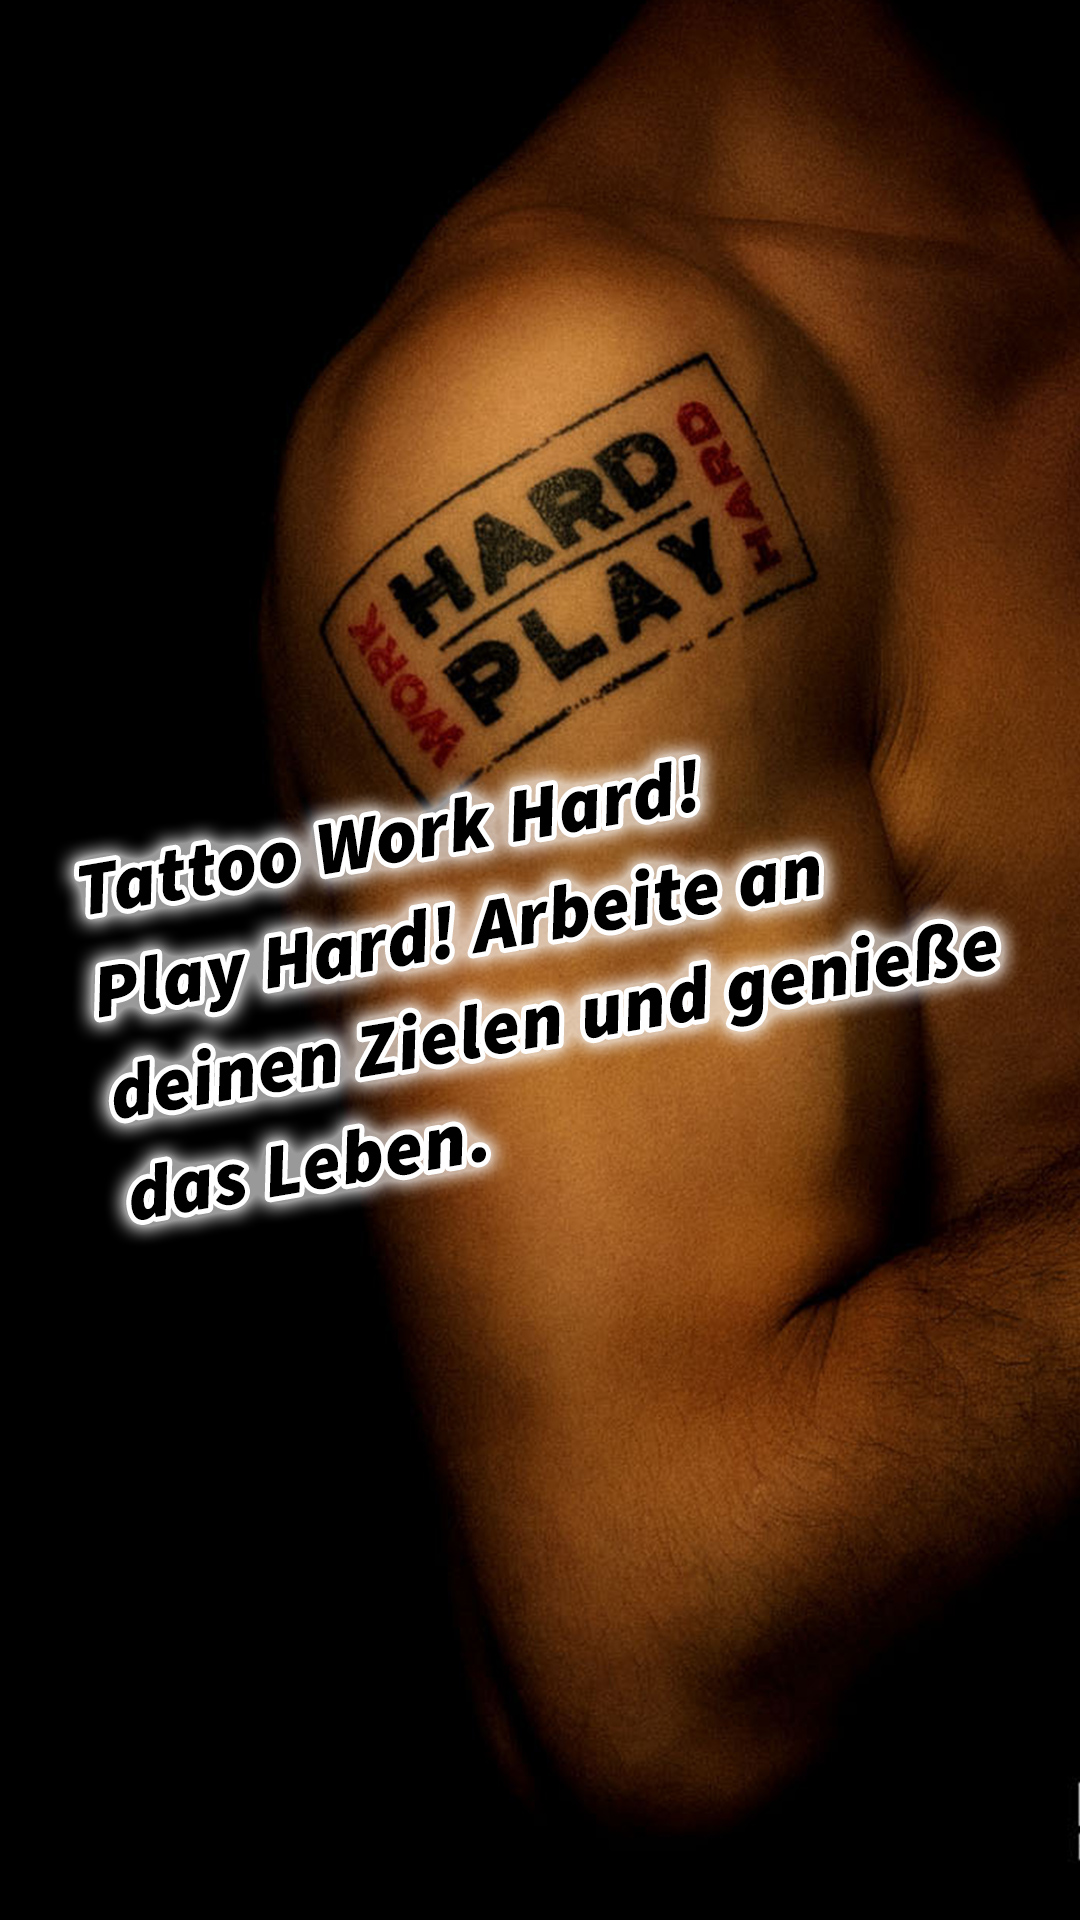 Tattoo Work Hard! Play Hard! Arbeite an deinen Zielen und genieße das Leben.